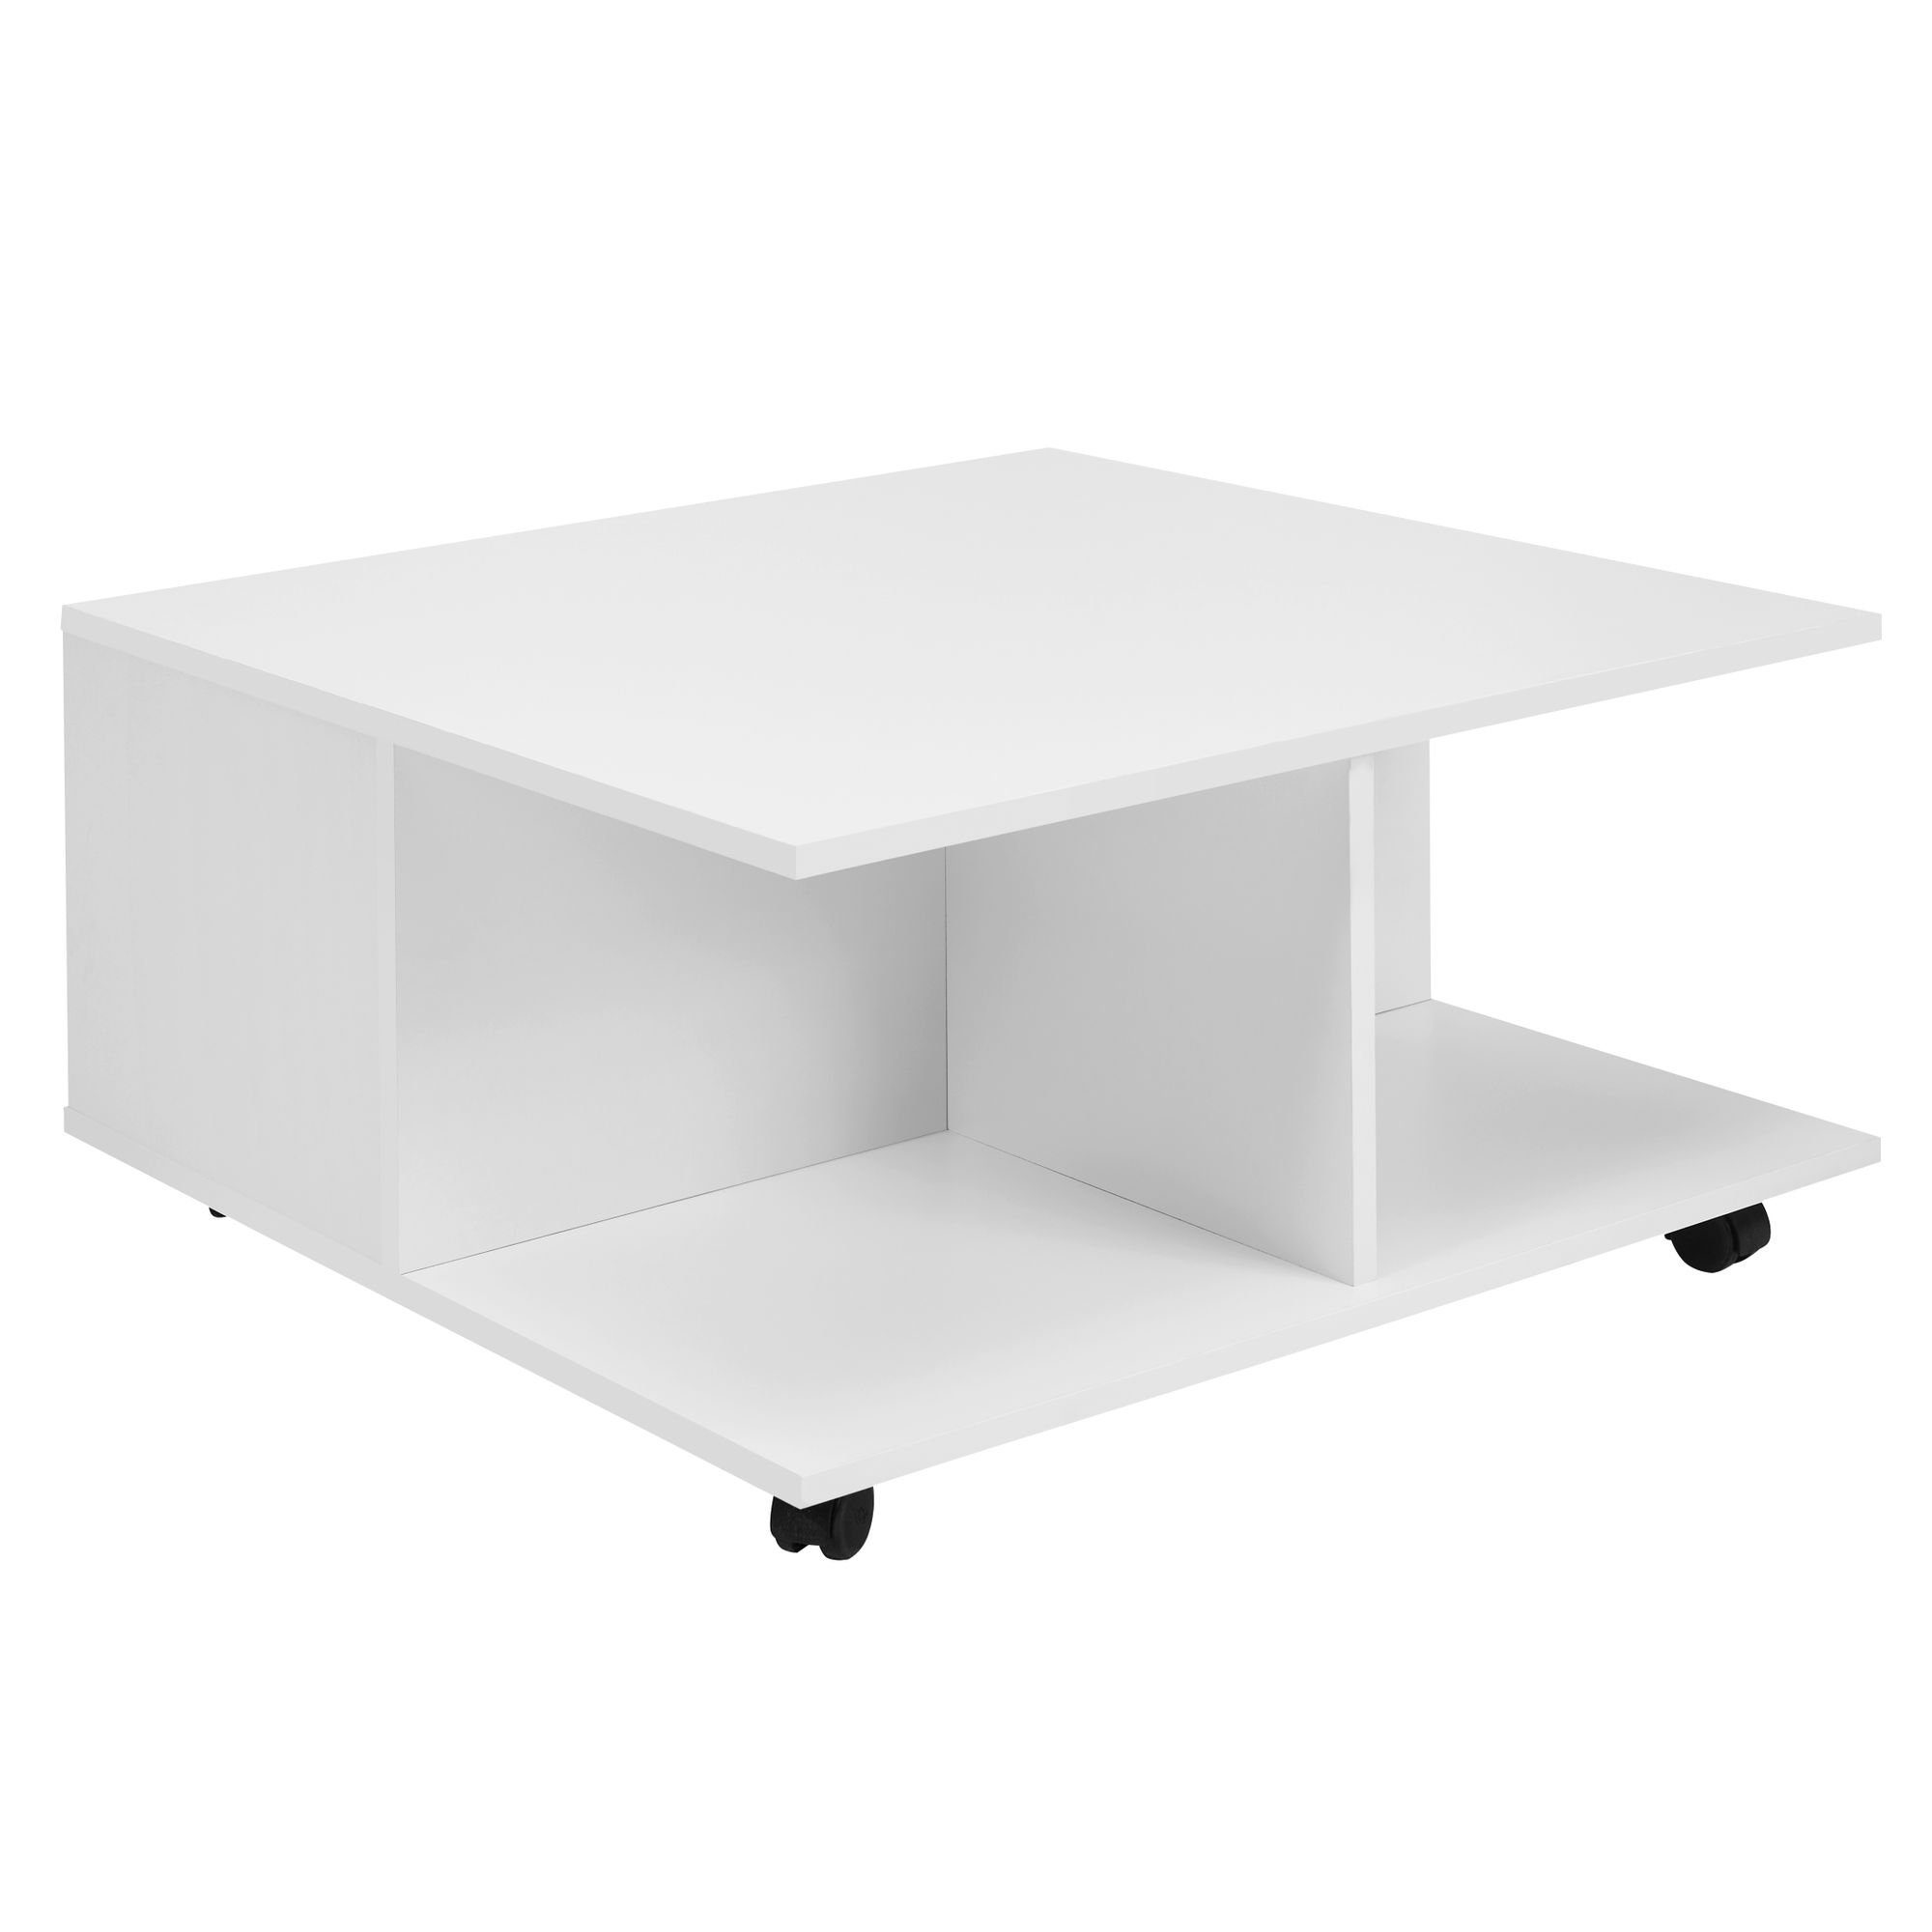 möbelando Couchtisch Design Couchtisch 70x70 cm Weiß, Wohnzimmertisch,  Design Couchtisch 70x70 cm Weiß, Wohnzimmertisch mit 2 Schubladen,  Sofatisch mit Rollen, Tisch mit 2 Fächern